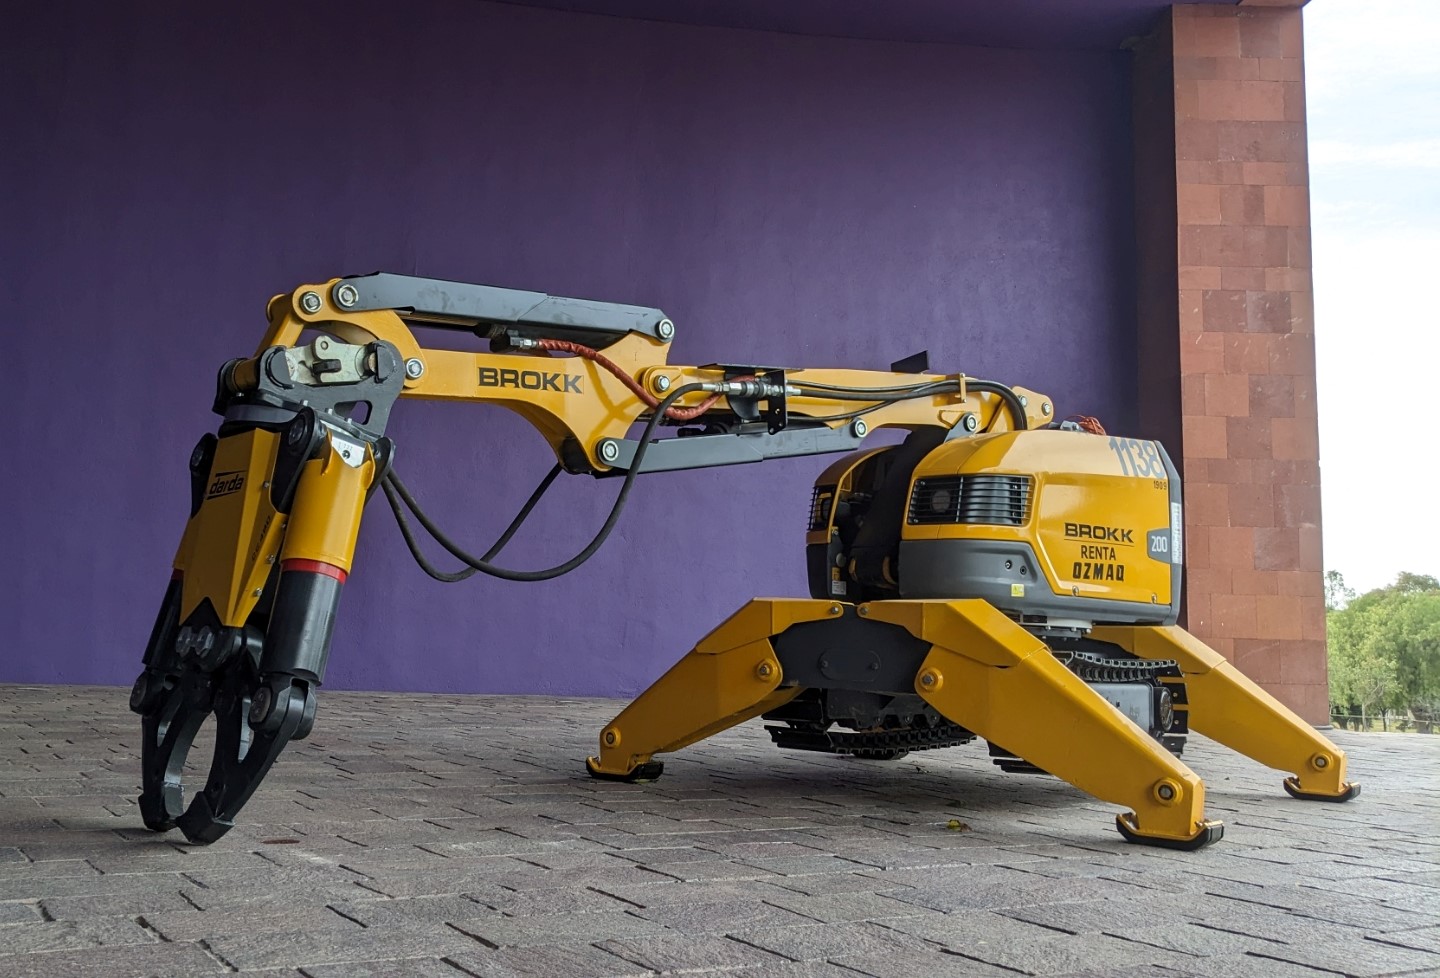 SECULT se complace en invitar al público en general a la exhibición de BROKK un robot especializado en demoliciones